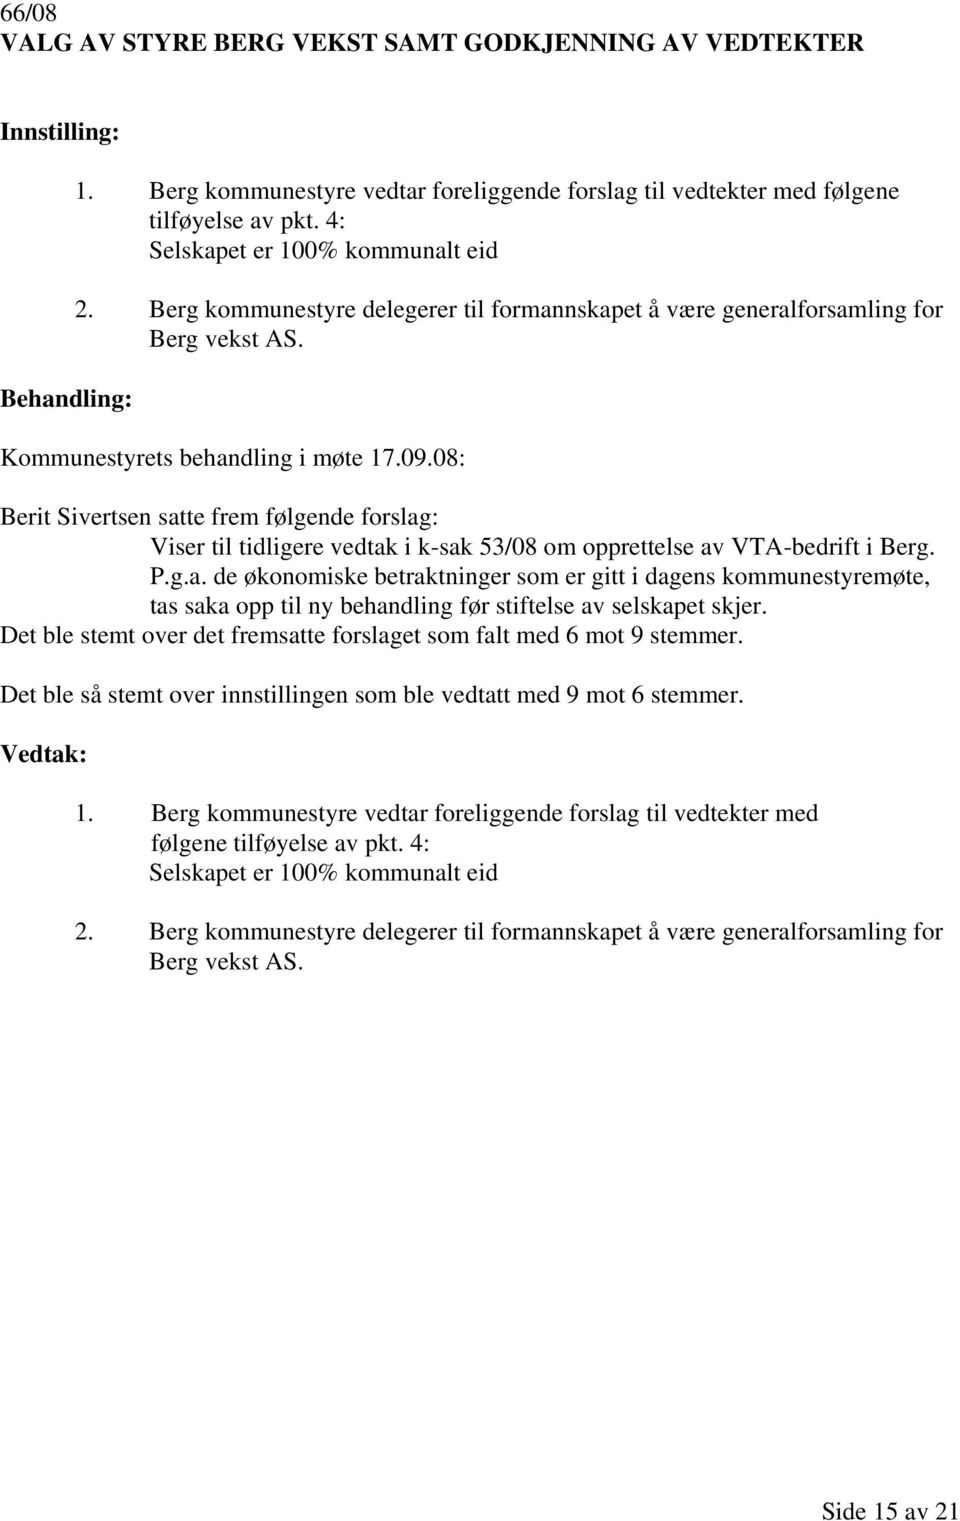 08: Berit Sivertsen satte frem følgende forslag: Viser til tidligere vedtak i k-sak 53/08 om opprettelse av VTA-bedrift i Berg. P.g.a. de økonomiske betraktninger som er gitt i dagens kommunestyremøte, tas saka opp til ny behandling før stiftelse av selskapet skjer.